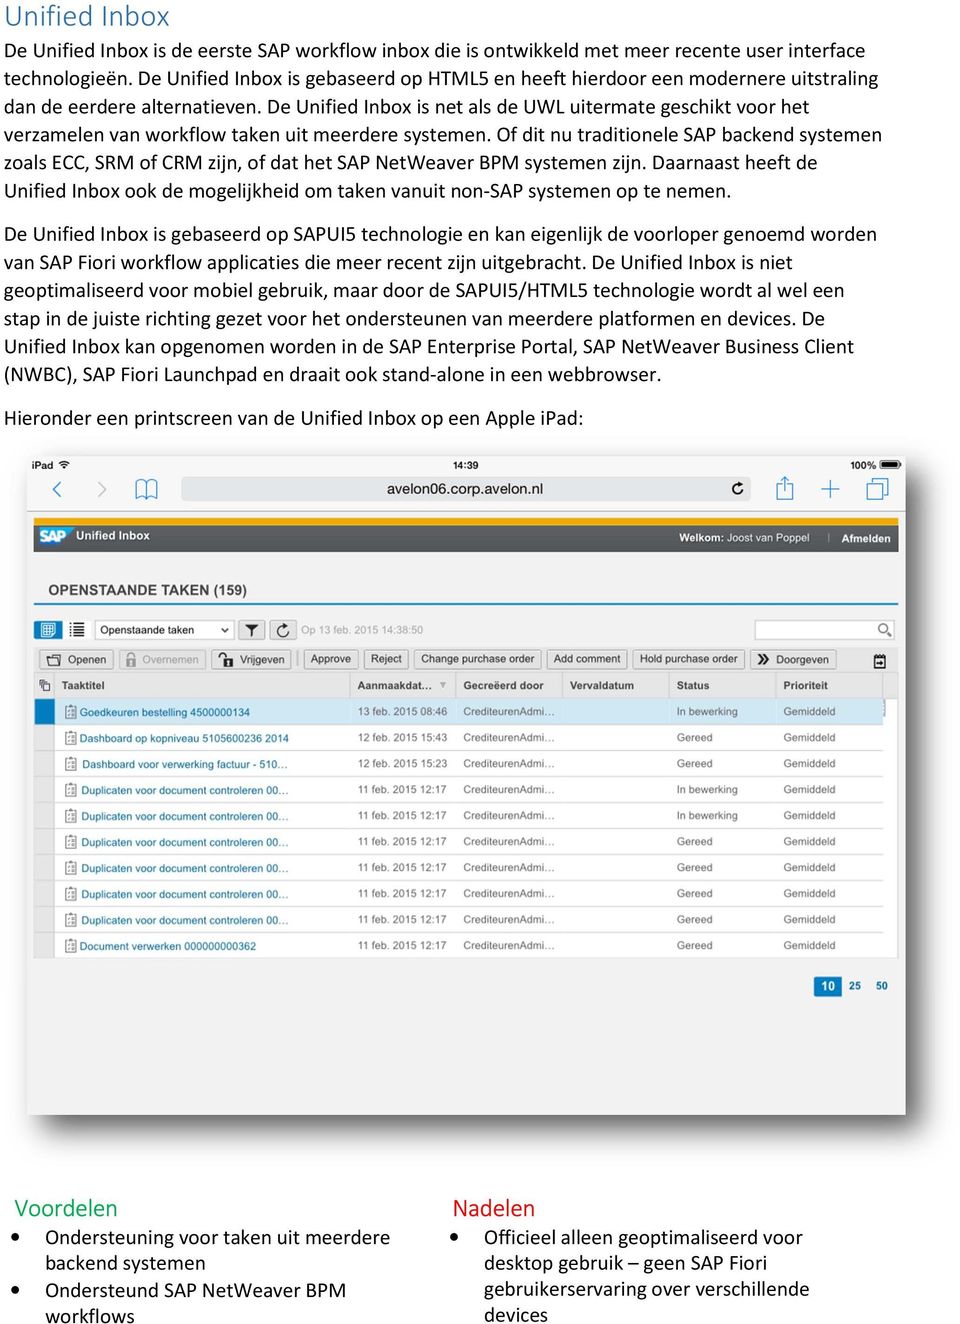 De Unified Inbox is net als de UWL uitermate geschikt voor het verzamelen van workflow taken uit meerdere systemen.